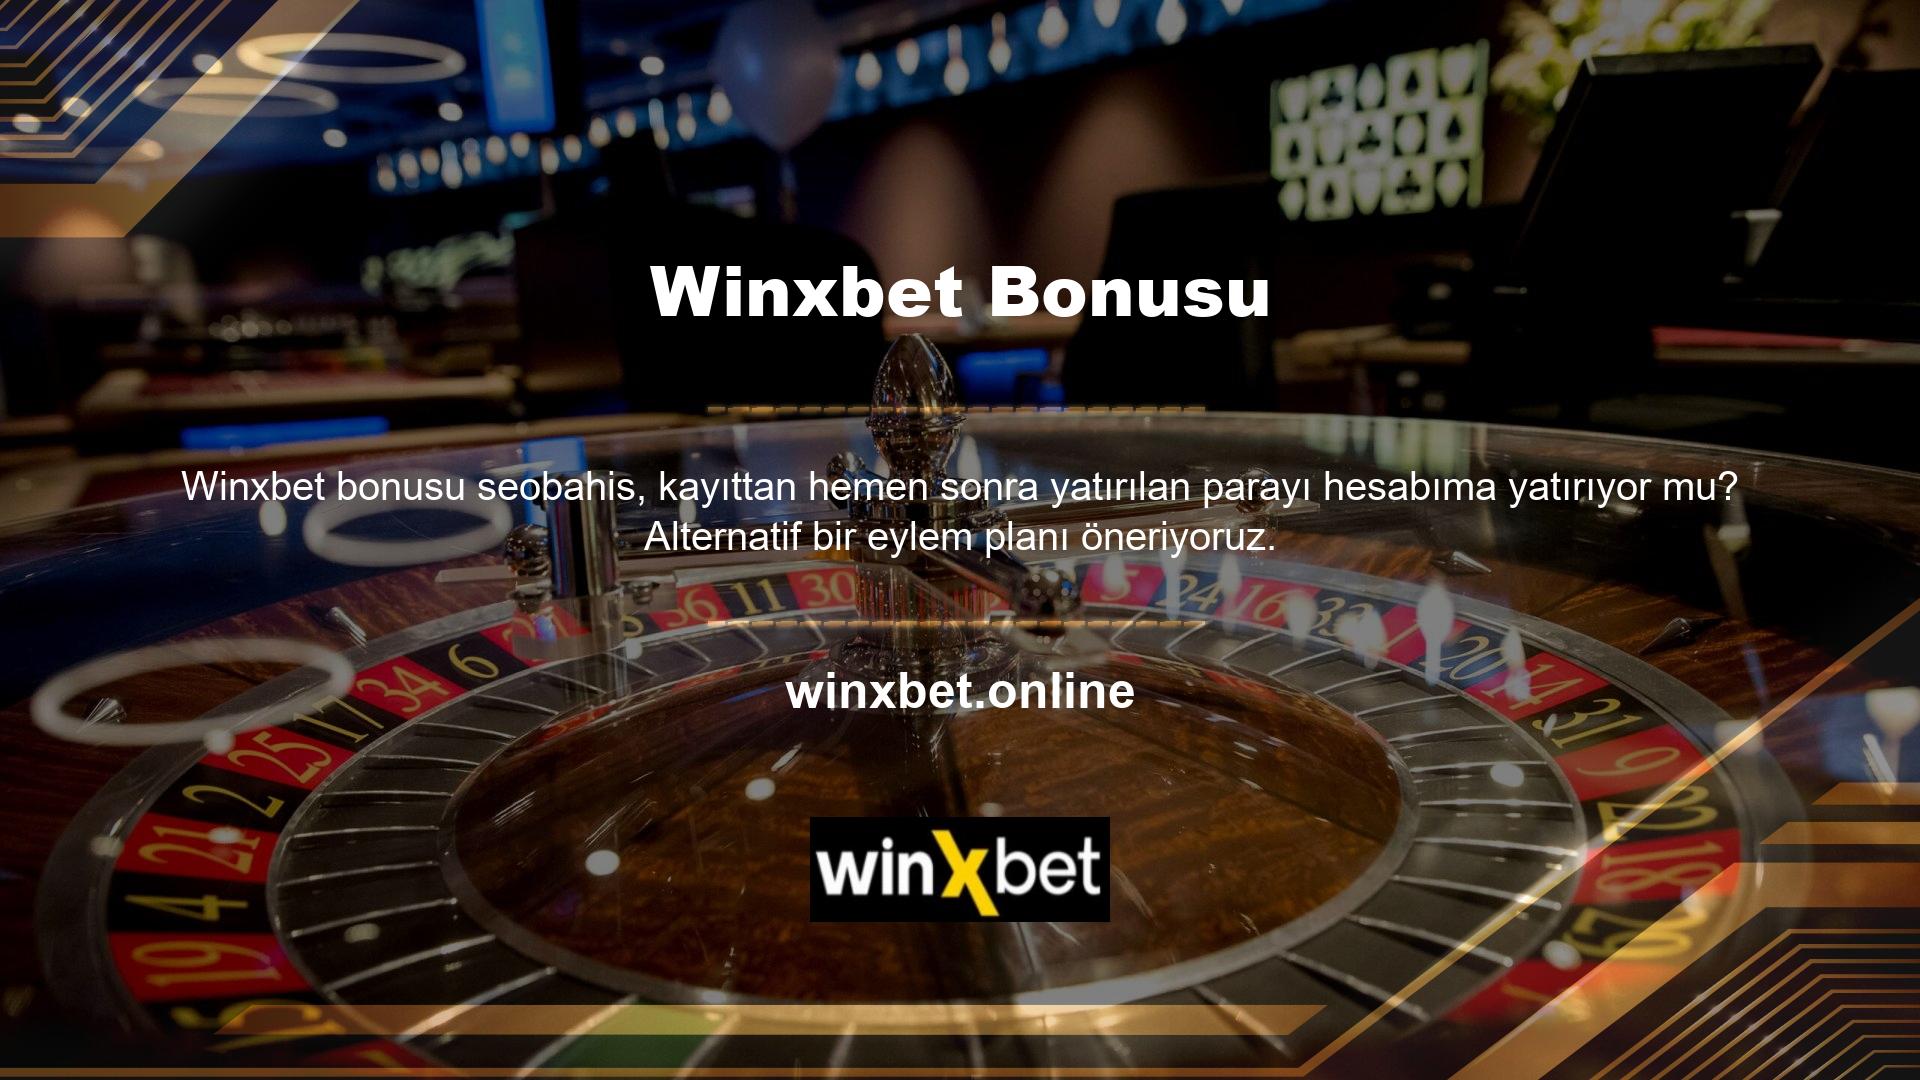 Hemen finanse edebileceğiniz Winxbet aboneliği ile artık tercih ettiğiniz casino ve spor bahis oyununa yatırım yapabilirsiniz